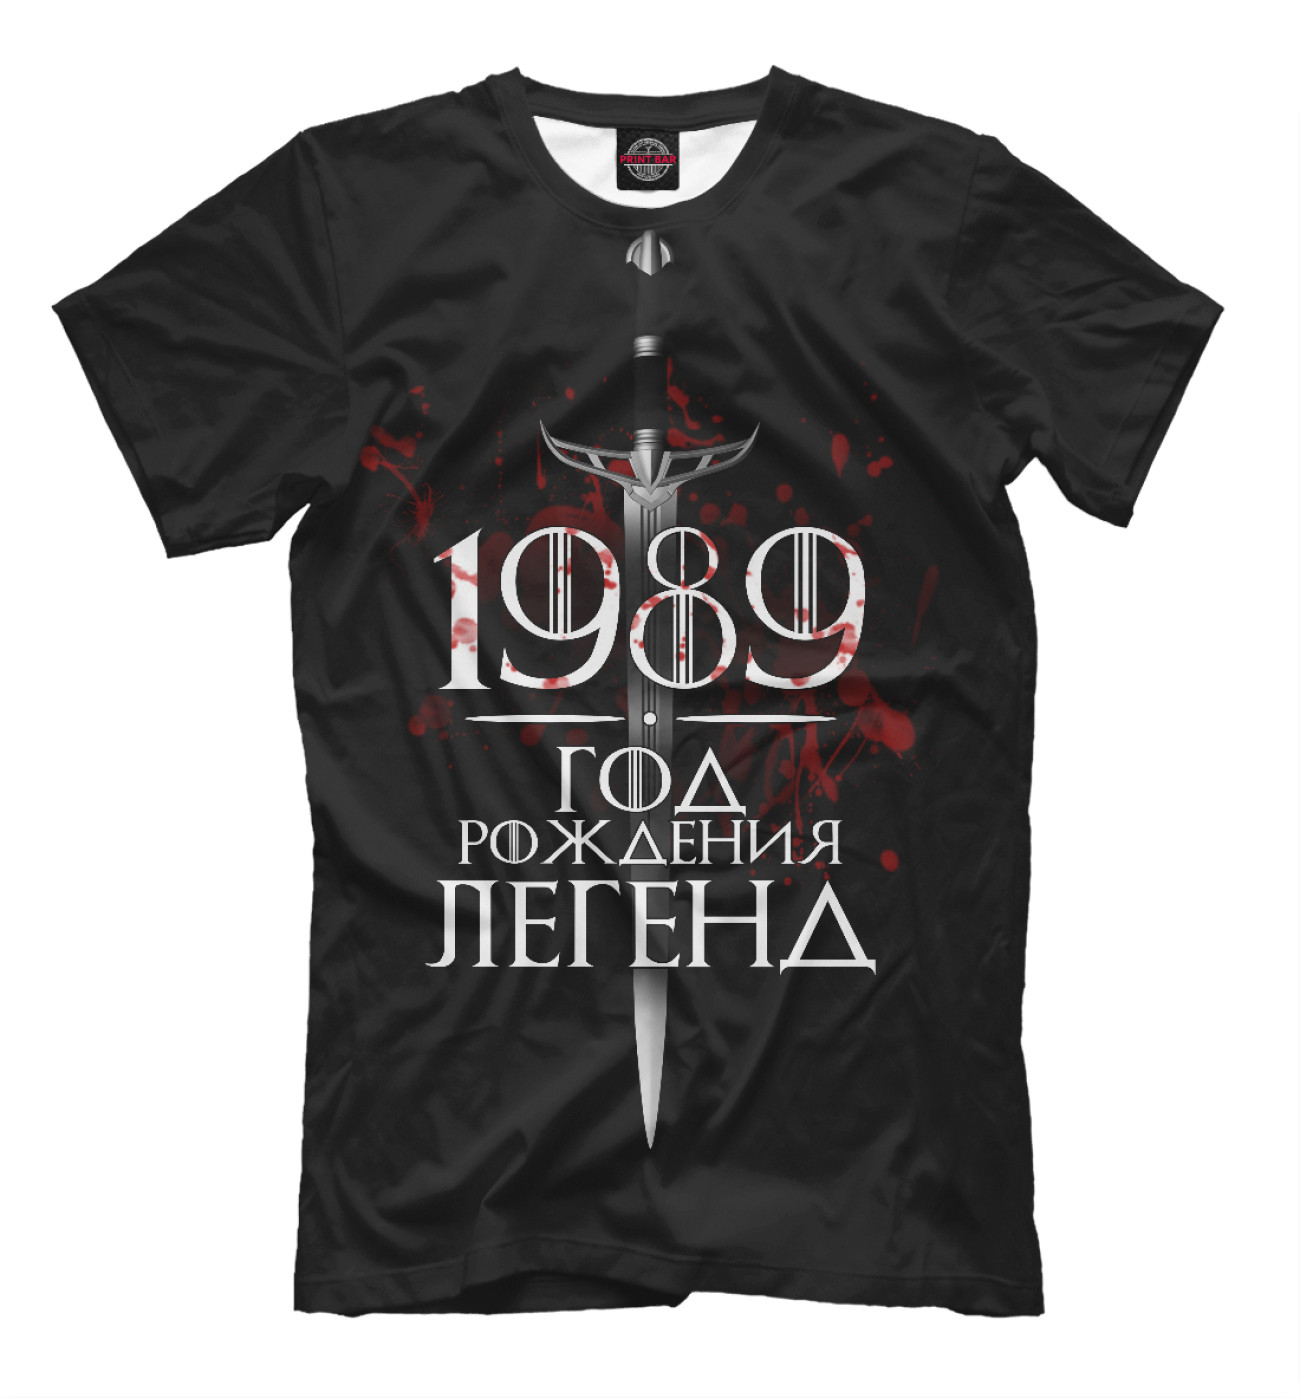 Мужская Футболка 1989, артикул: DVA-446261-fut-2